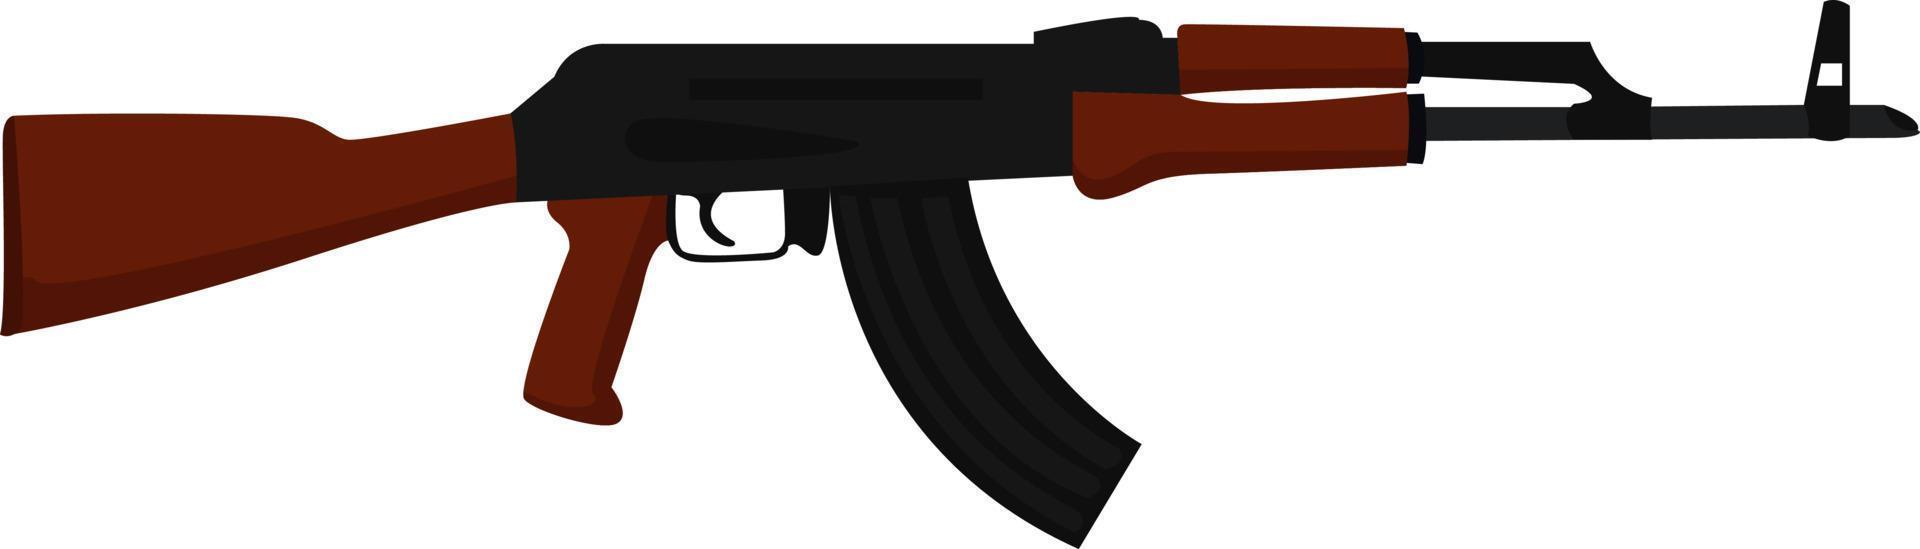 Fusil ak-47, illustration, vecteur sur fond blanc